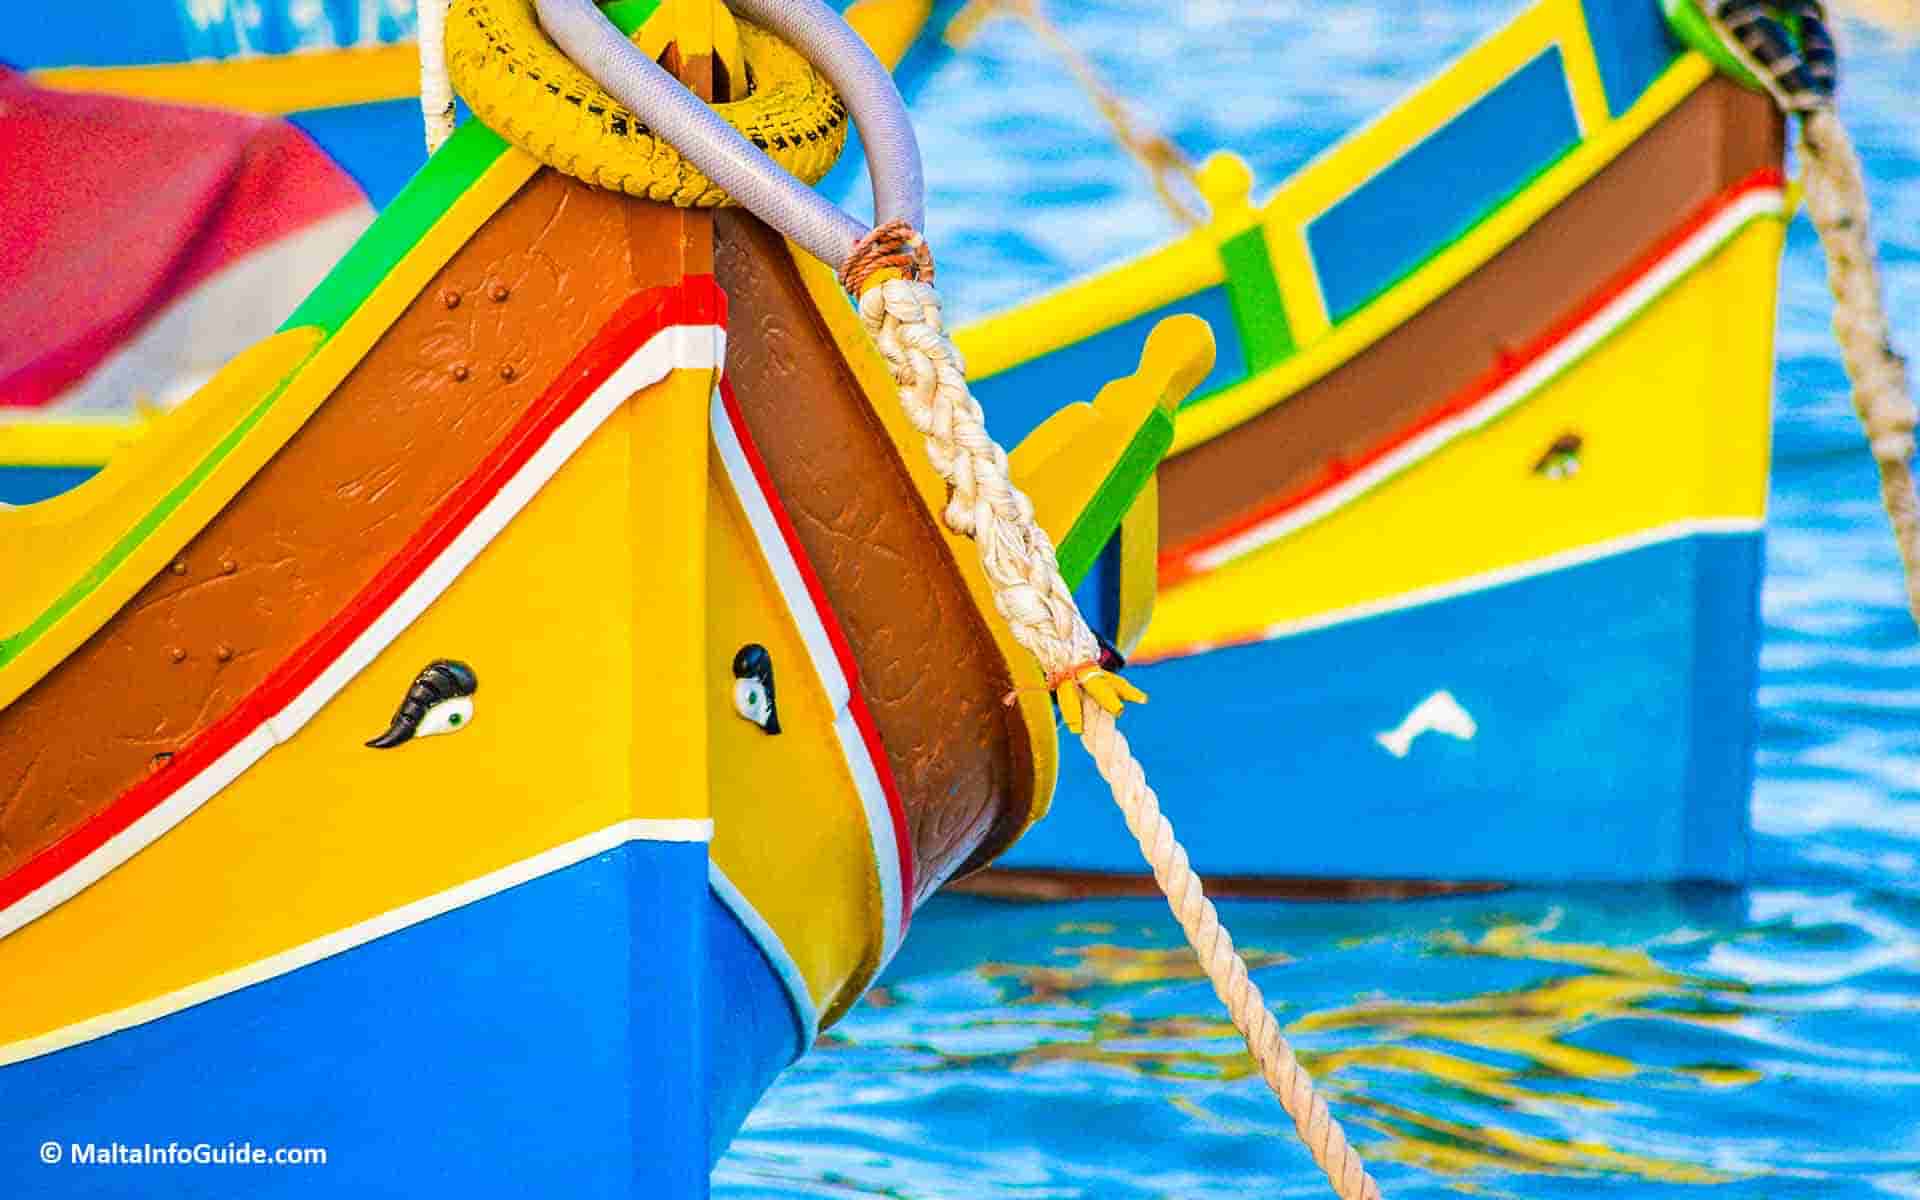 The beautiful 'luzzu' boats moored at Marsaxlokk fishing village.